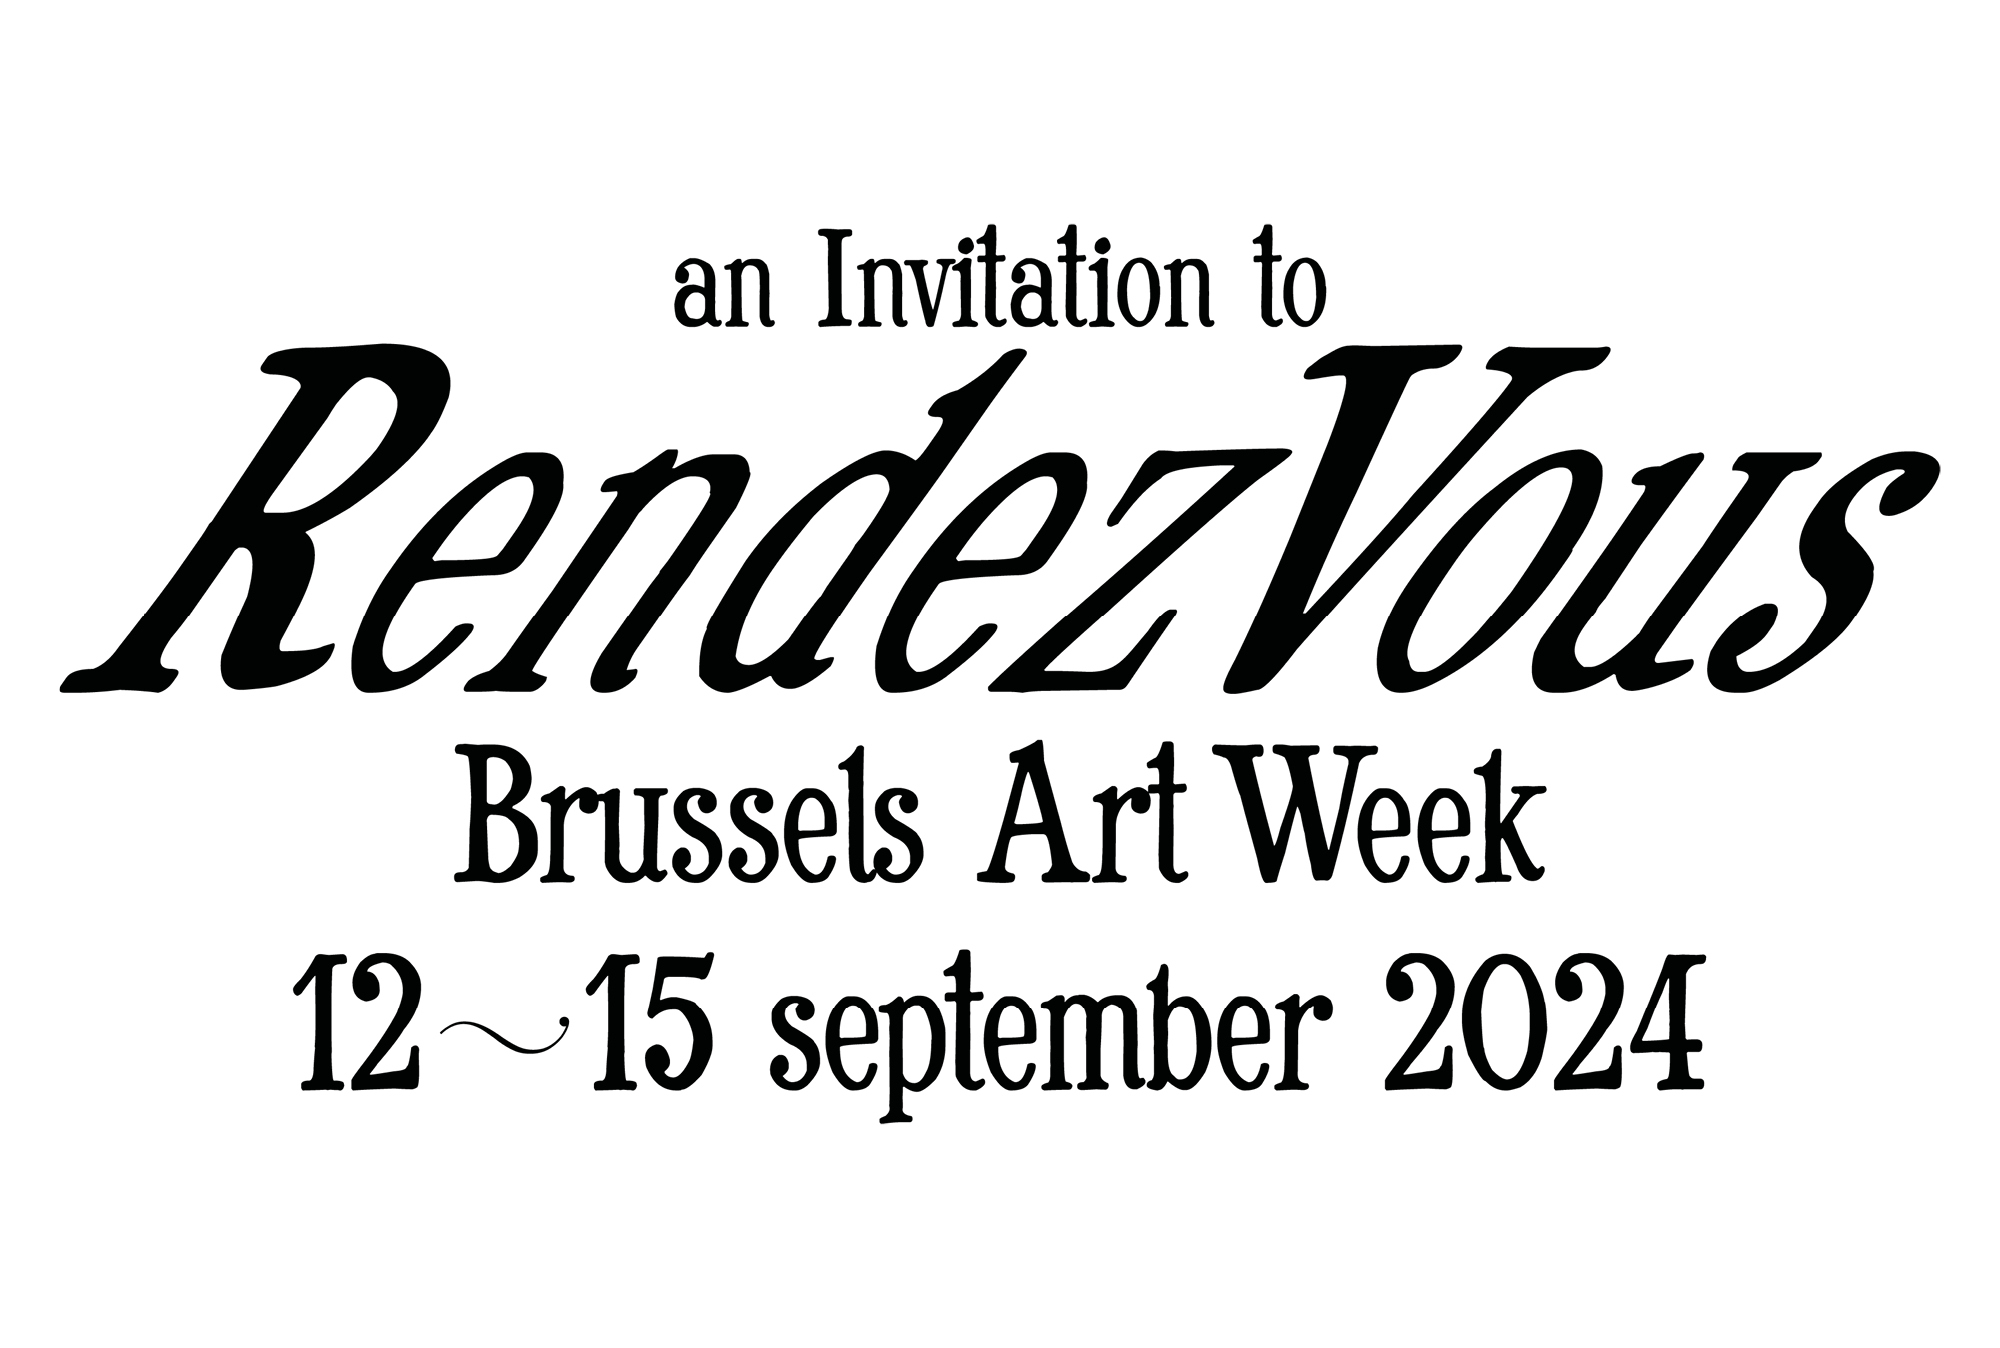 RendezVous -Brussels Art Week